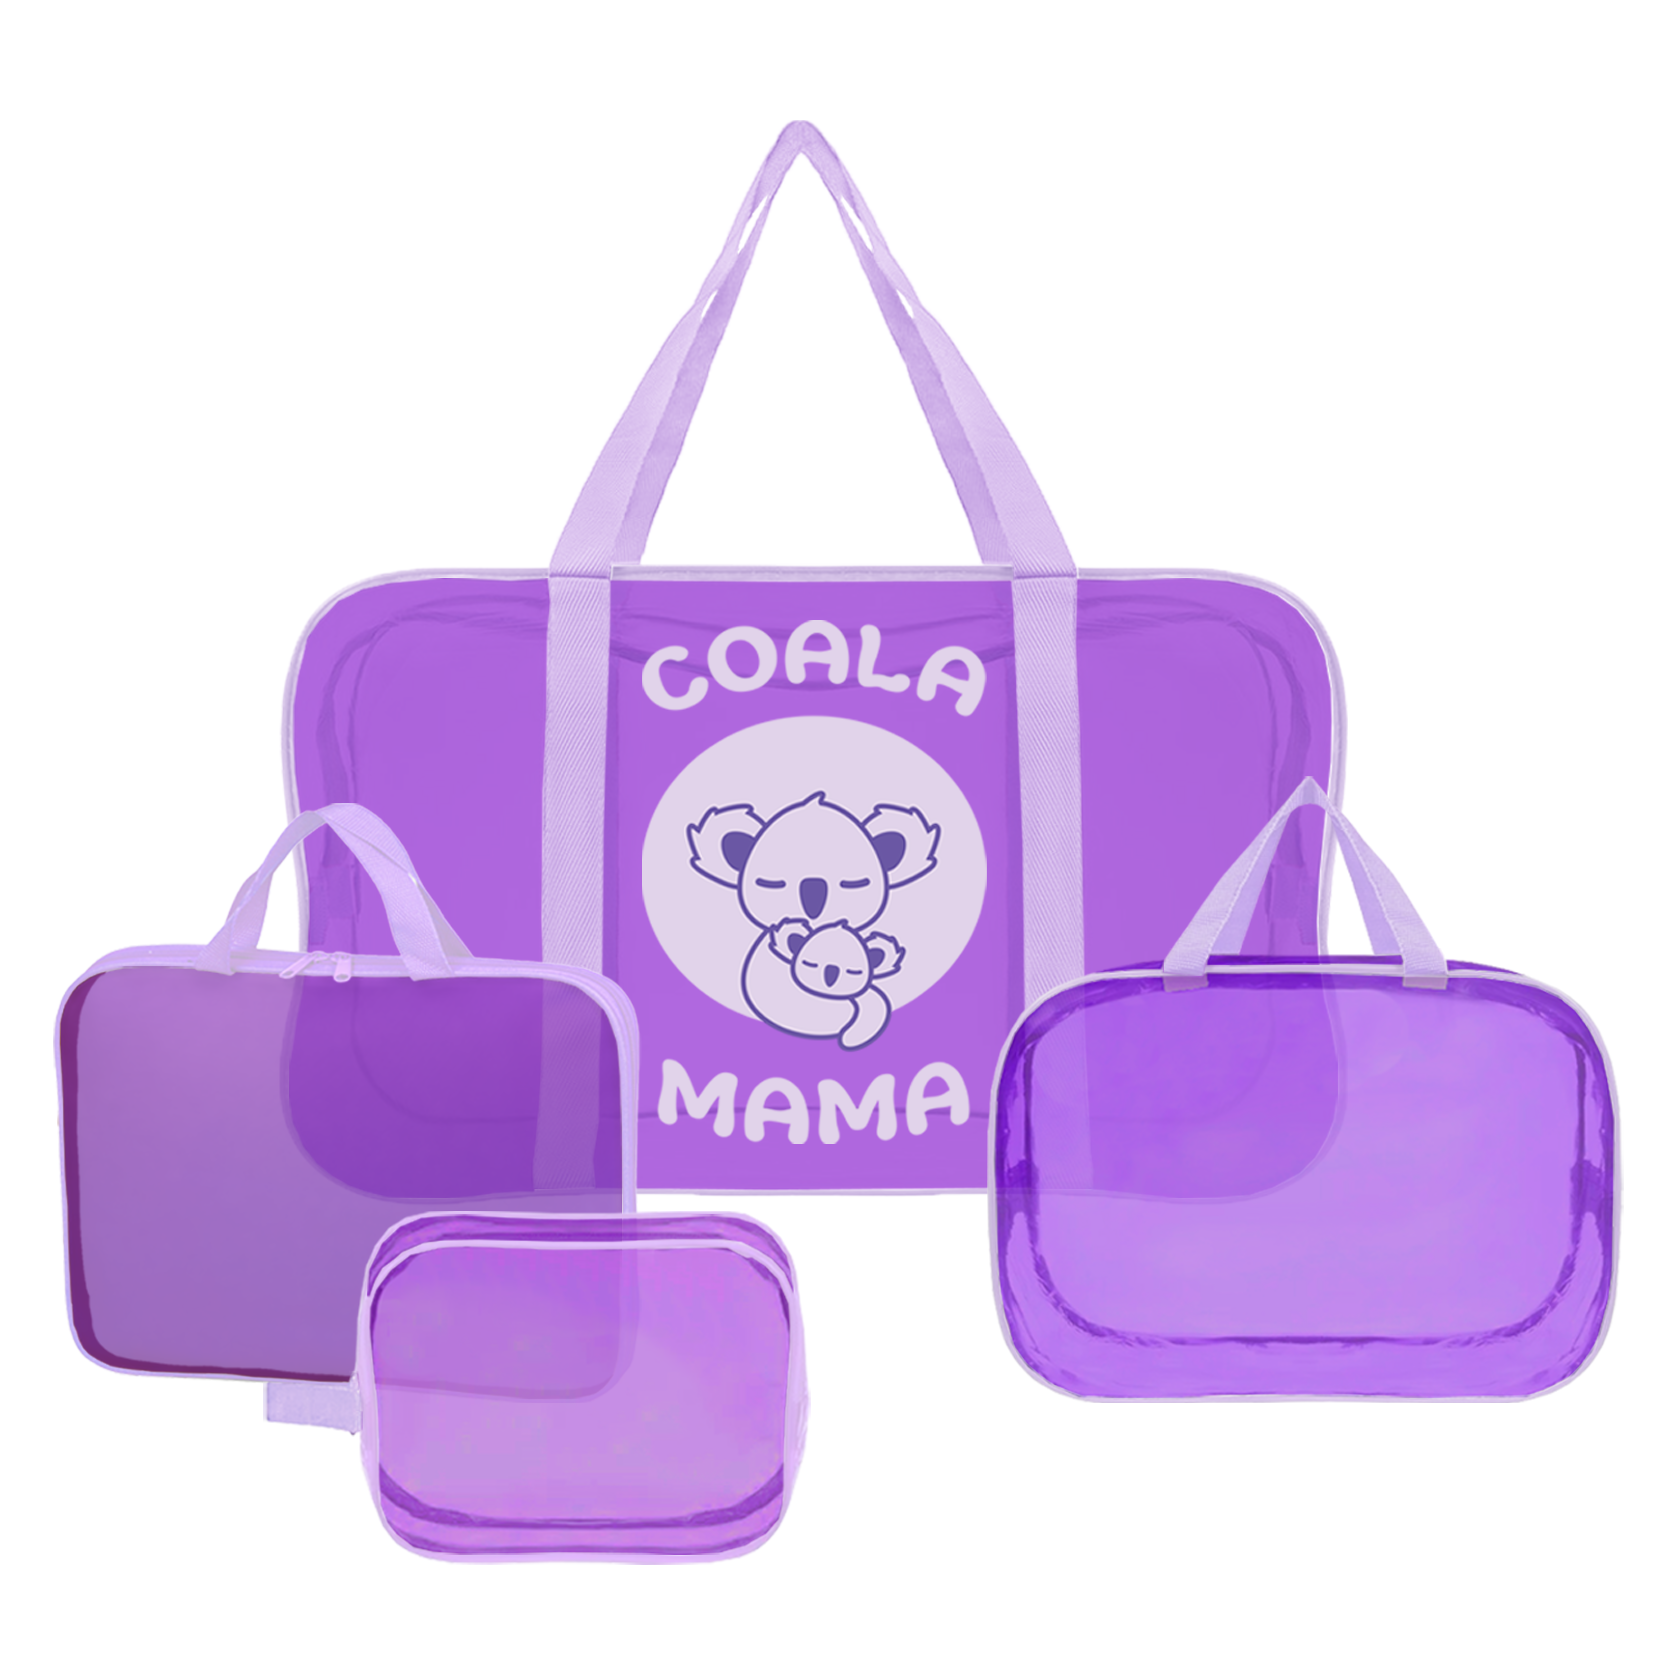 Набор сумок в роддом Coala Mama, Dark Violet, 4 шт универсальных размеров